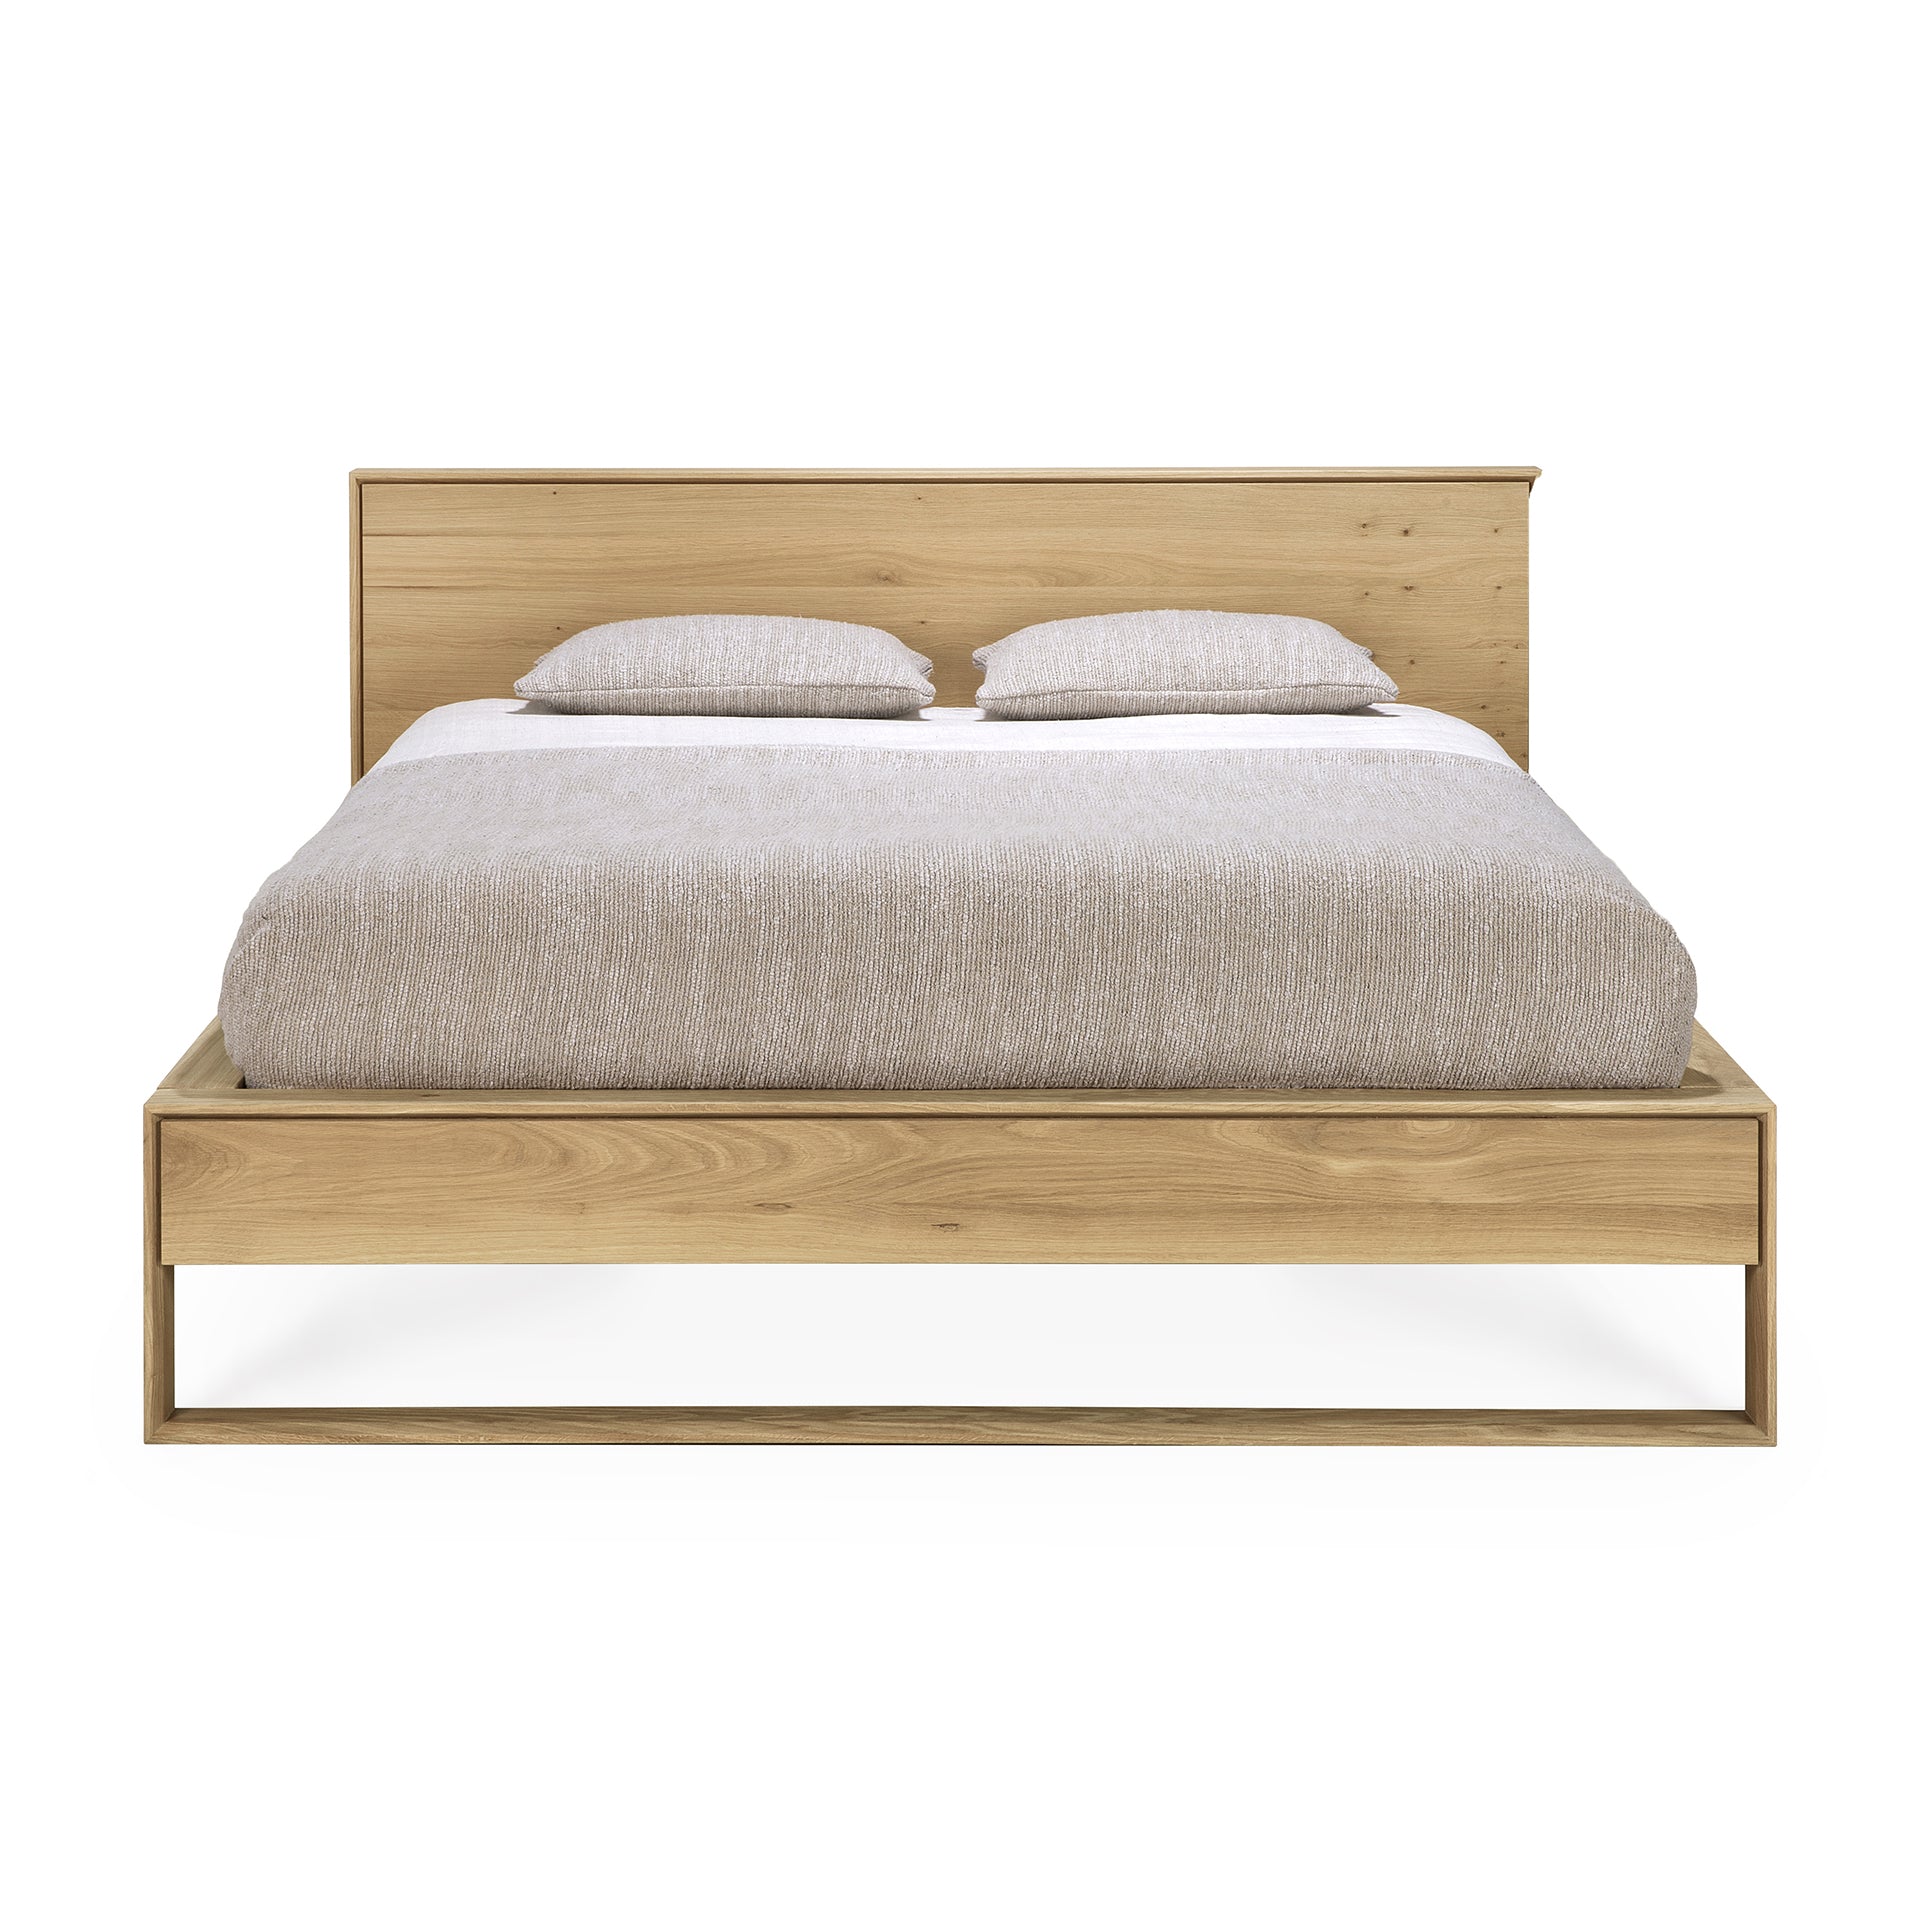 比利時原裝進口實木傢俬 - 臥室系列 - Nordic II系列橡木床